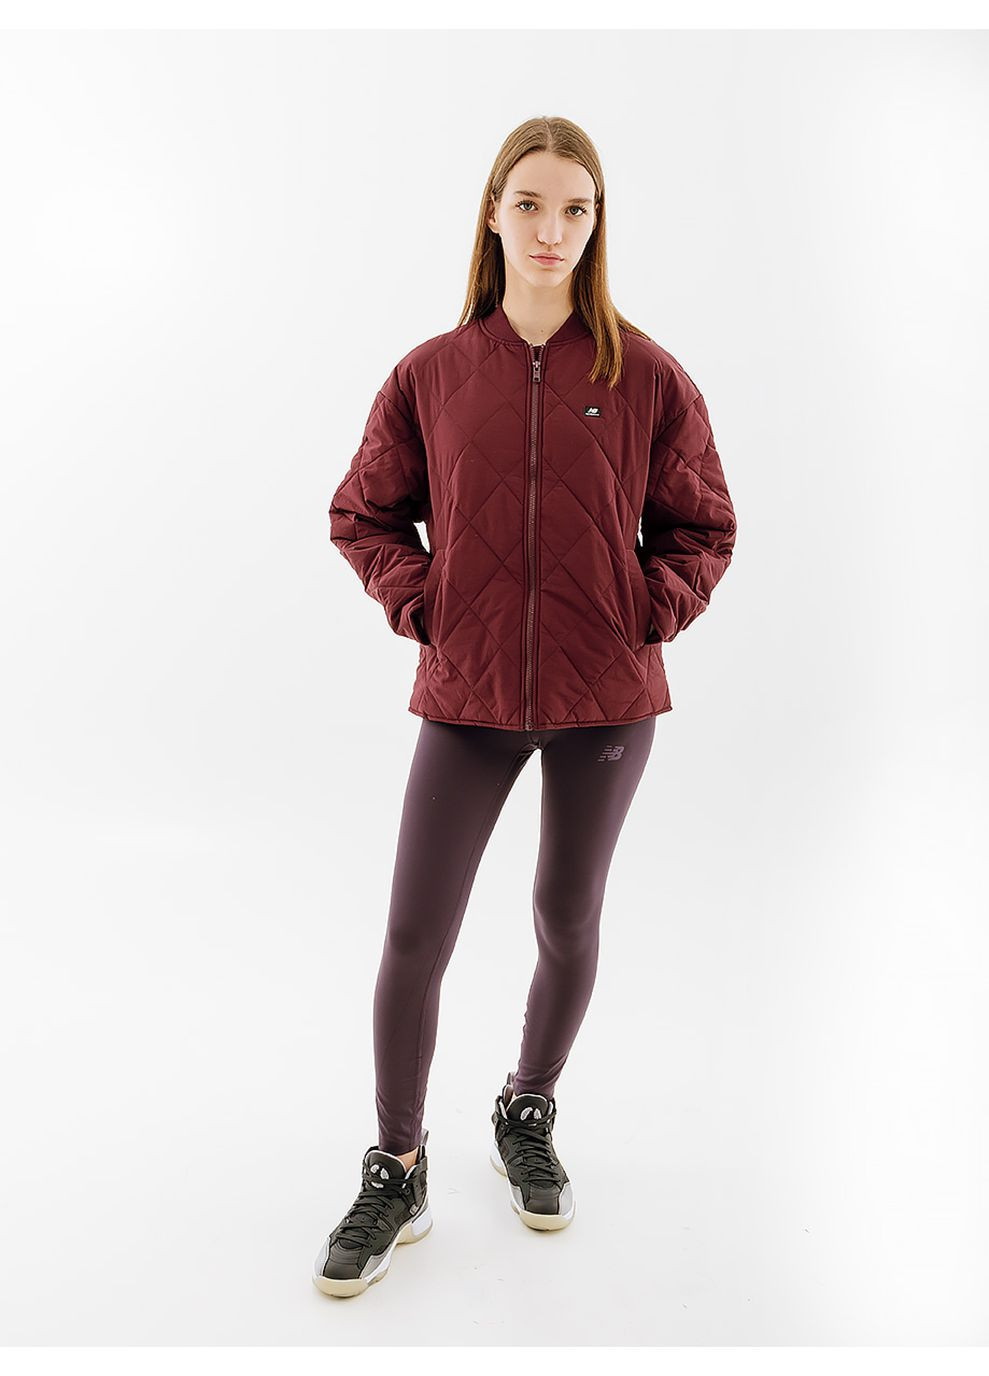 Бордовая демисезонная женская куртка athletics fashion бордовый New Balance